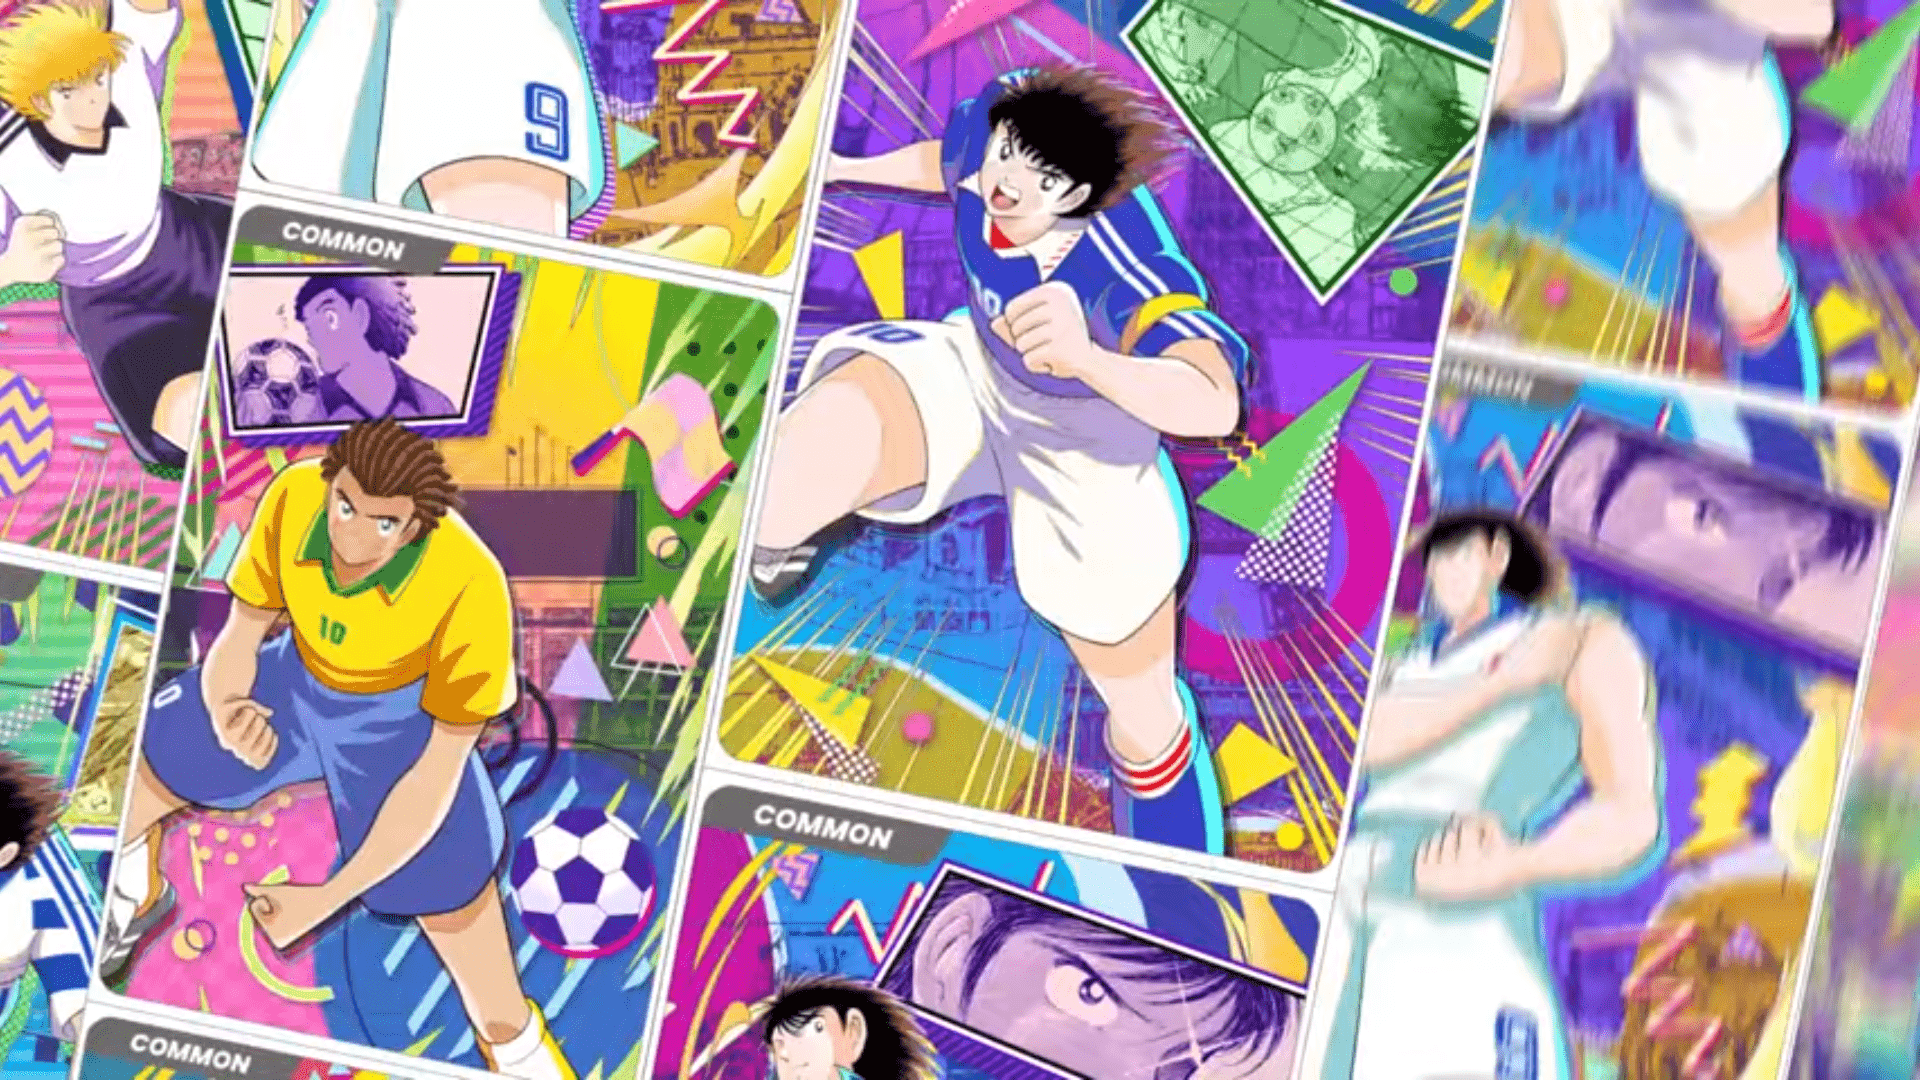 &quot;Captain Tsubasa -RIVALS-&quot;, dünya çapındaki futbol meraklıları üzerinde silinmez bir iz bırakan ünlü futbol mangası &quot;Captain Tsubasa&quot;dan ilham alan bir blockchain oyunudur.